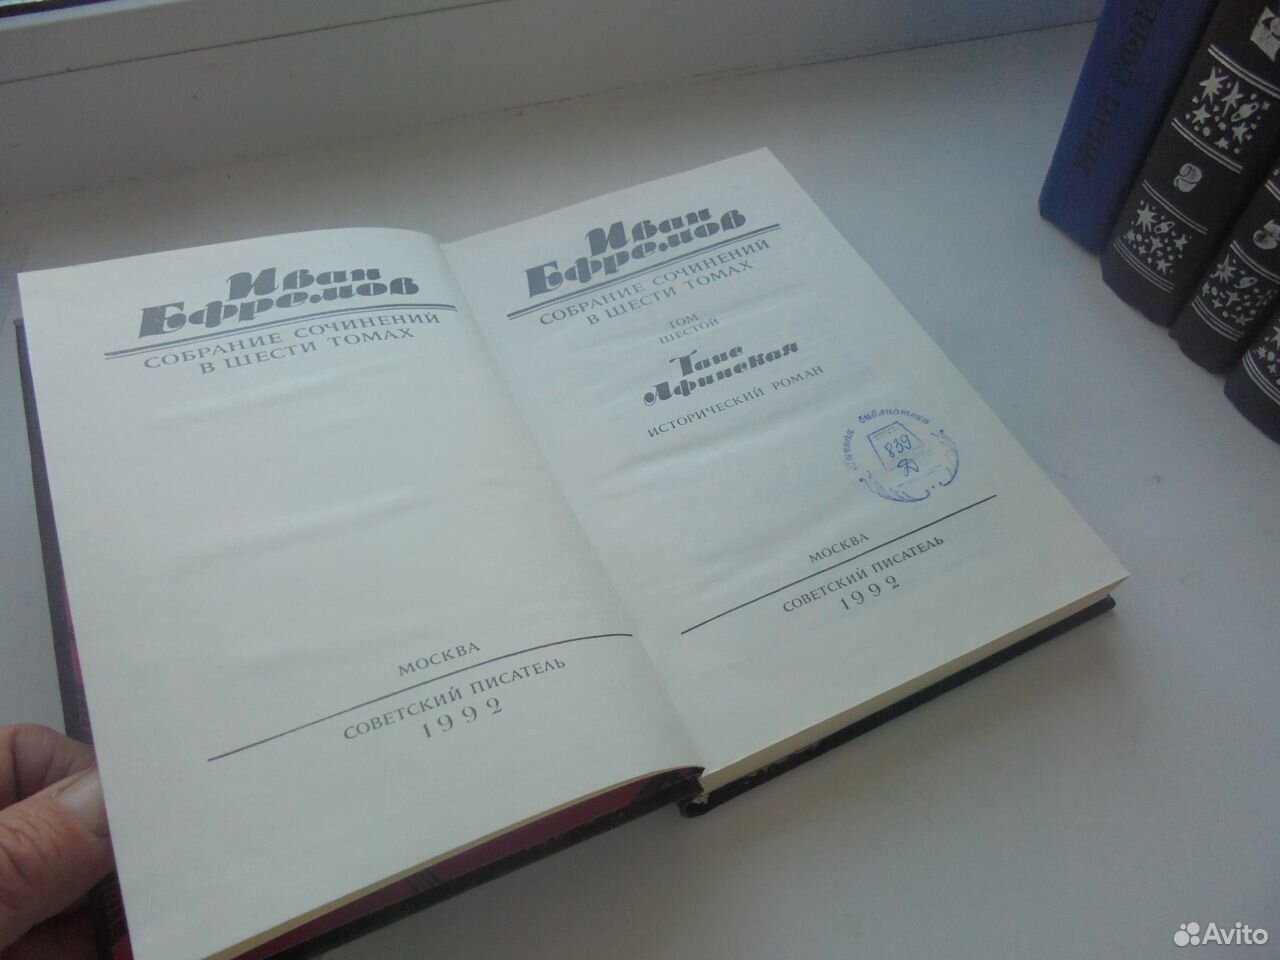 Иван Ефремов Собр сочин в 6 томах Совр писат 1992 89105009779 купить 4